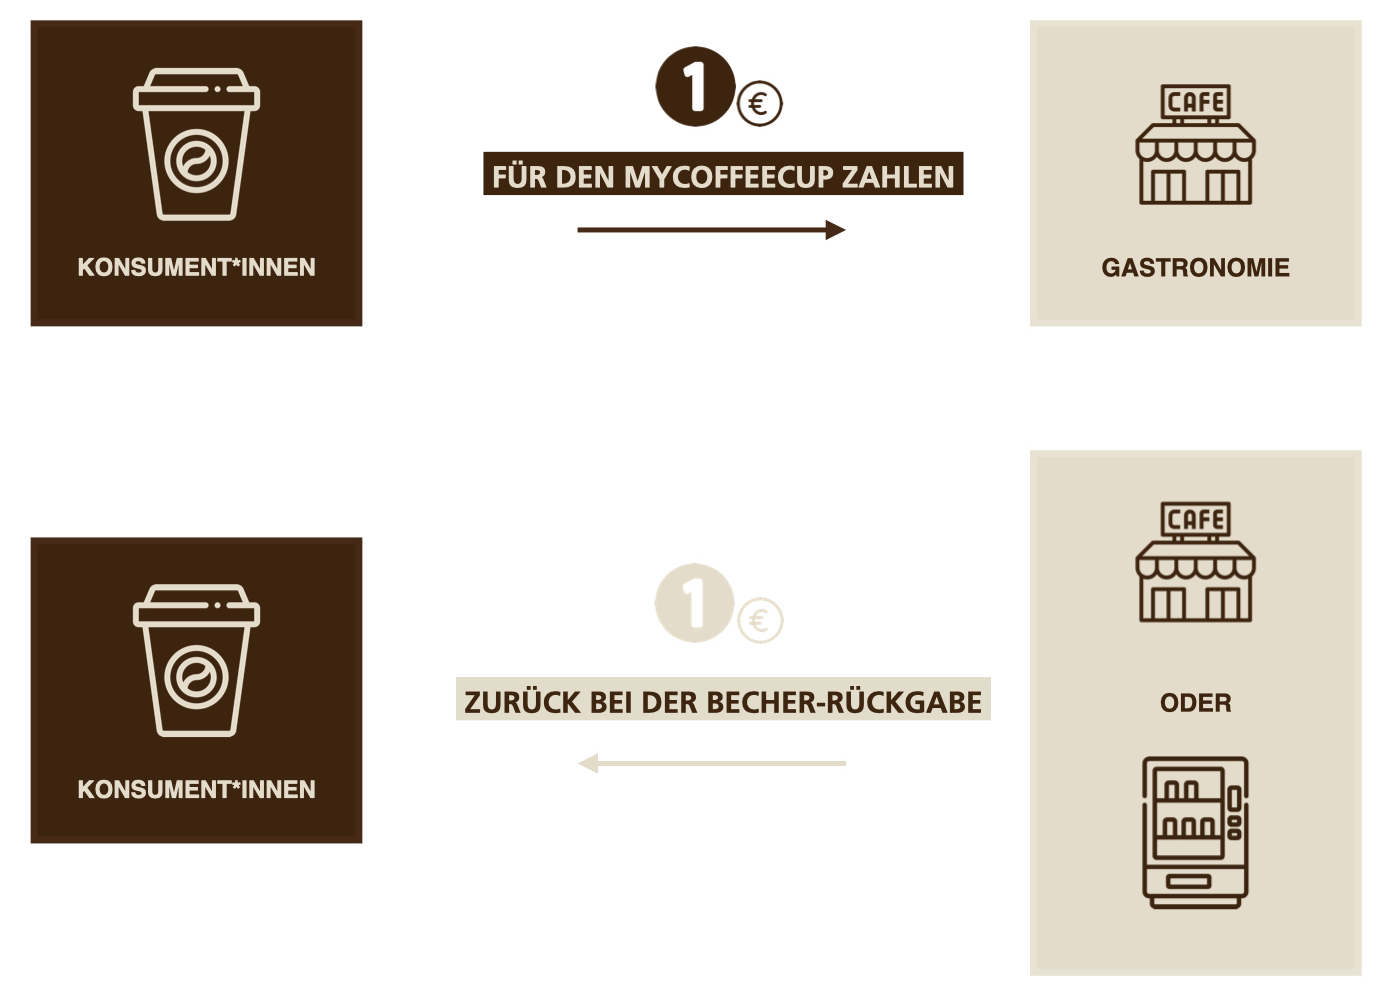 Auf diesem Bild sieht man die Funktionsweise des myCoffeeCup Mehrwegsystems. Als Konsument 1 Euro für den myCoffeeCup bei der Gastronomie zahlen und 1 Euro wieder retour bekommen bei der Rückgabe - entweder bei einem Automaten oder wieder bei der Gastronomie.